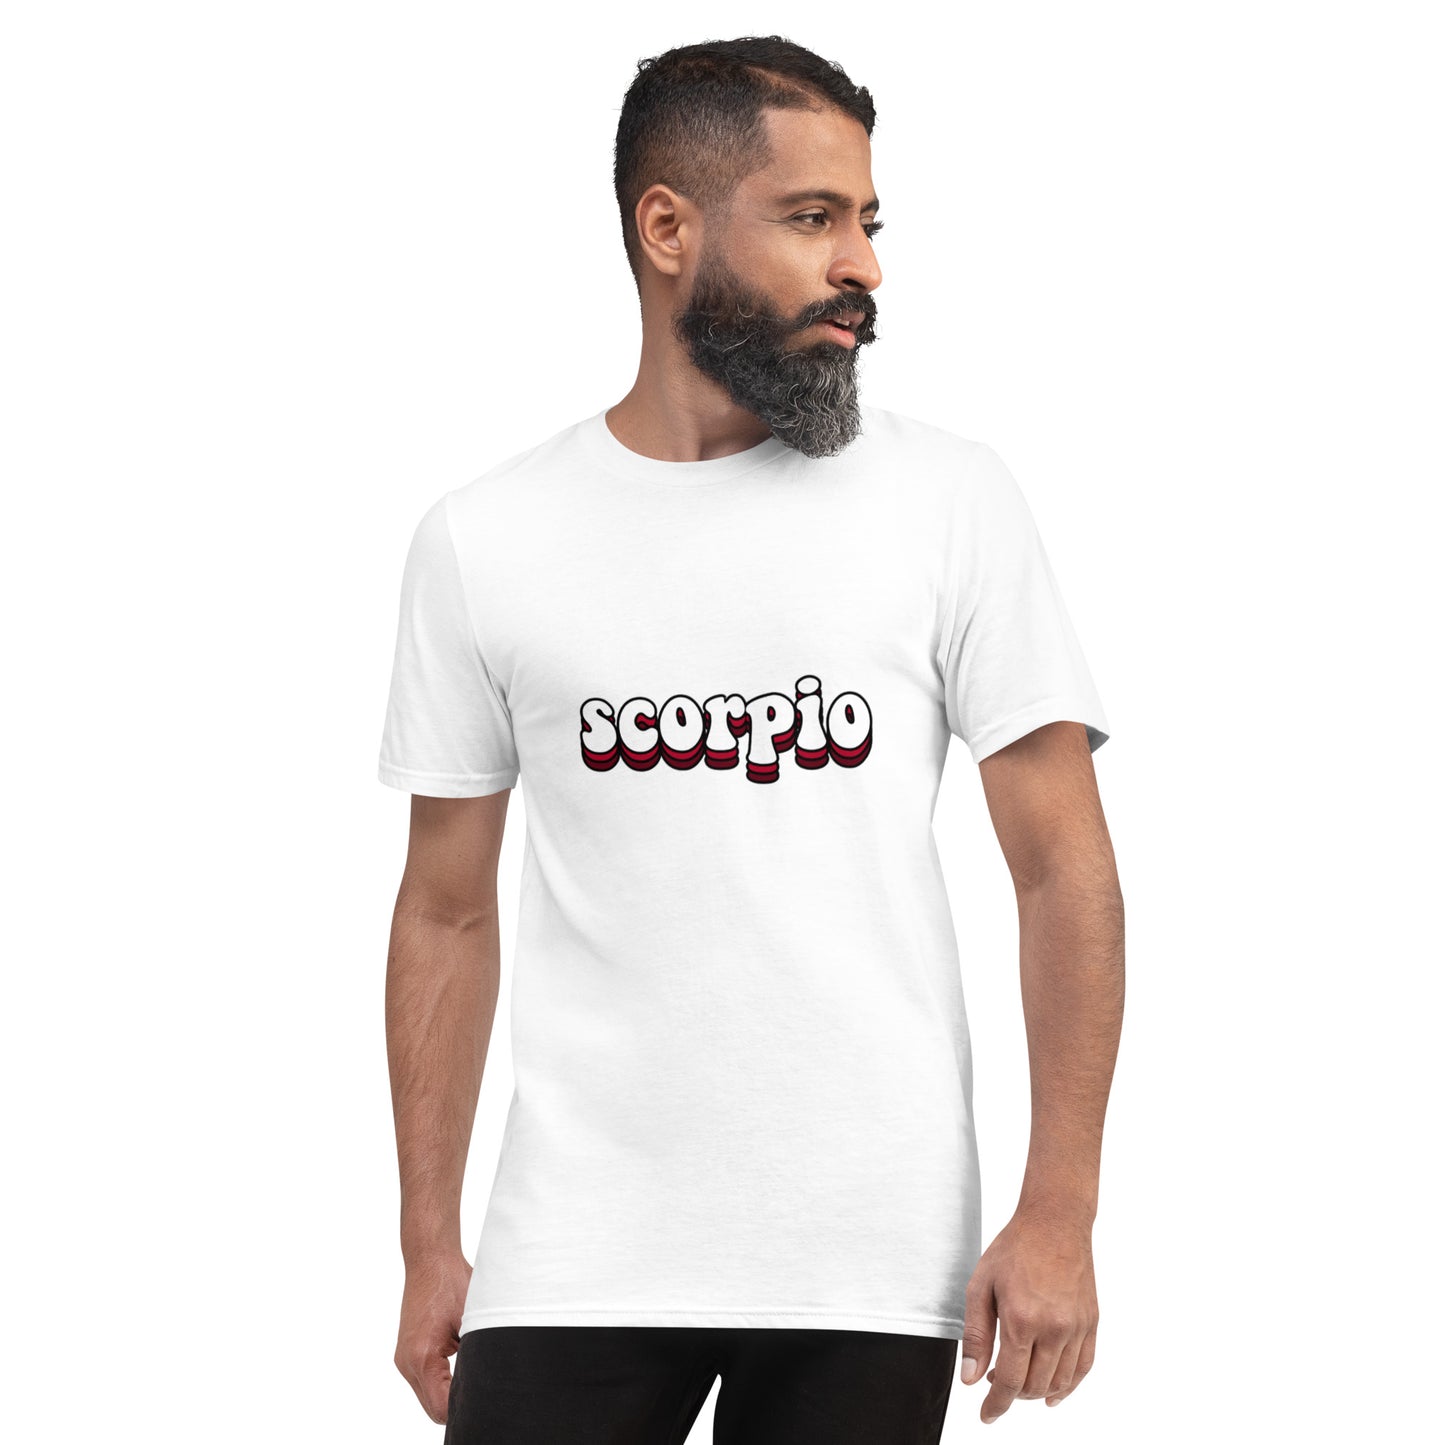 Scorpio Short-Sleeve T-Shirt